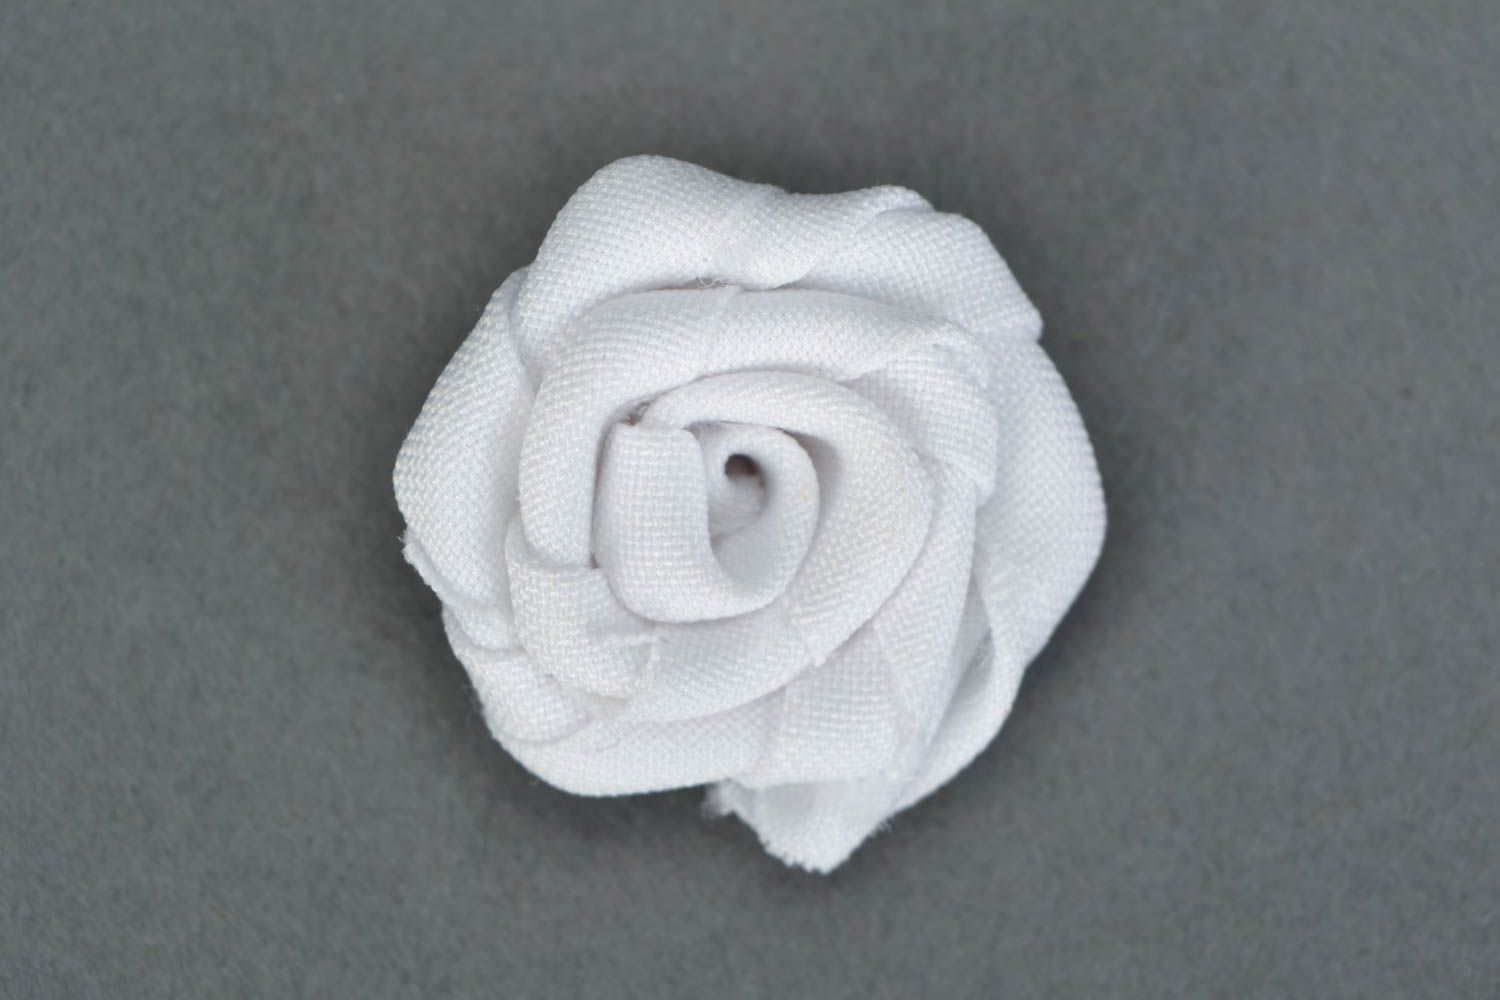 Petite fleur artificielle en tissu blanche faite main pour broche ou barette photo 1